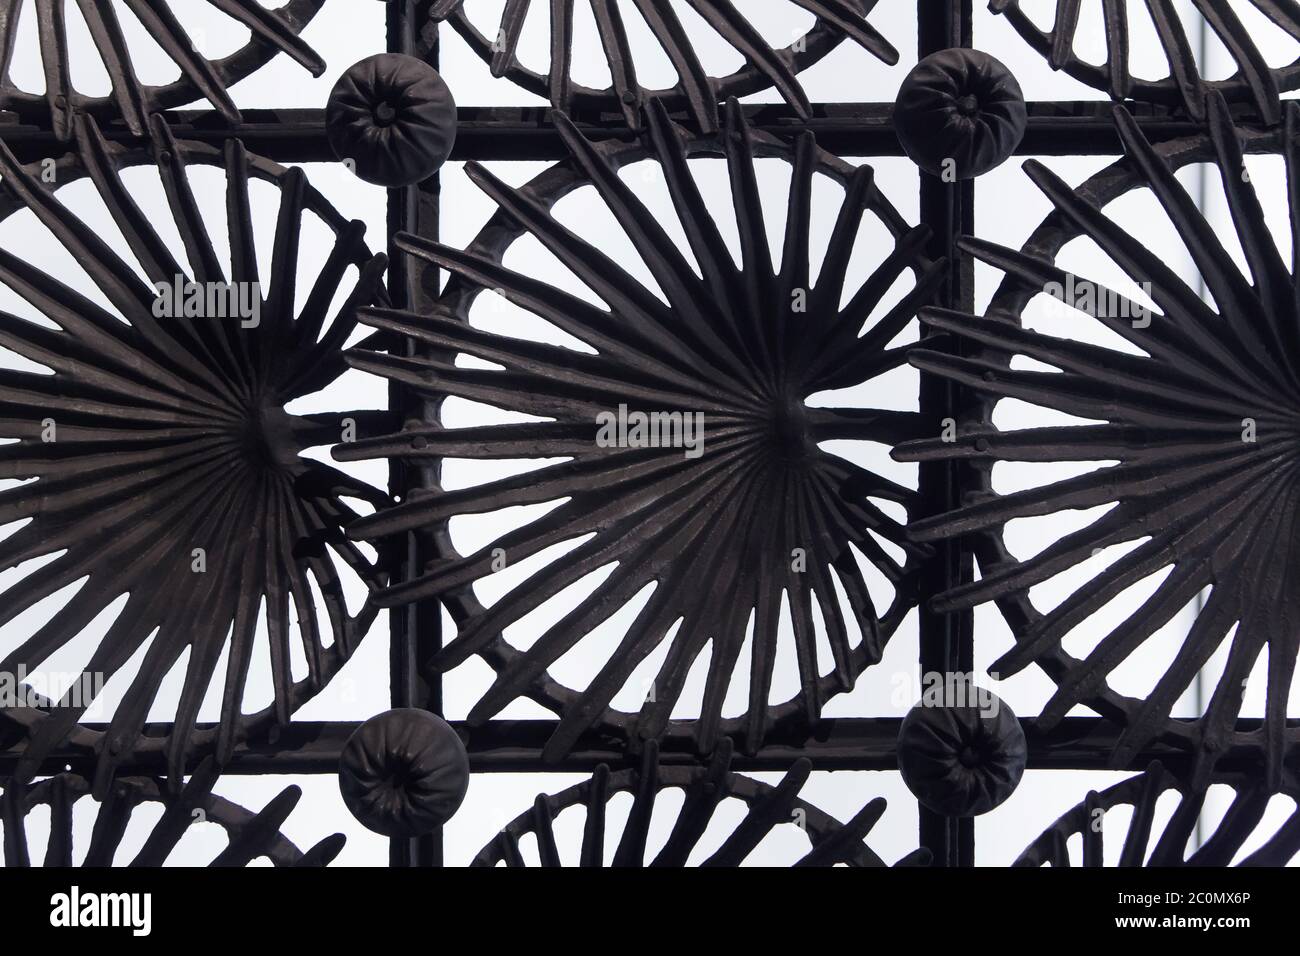 Porte en fonte pour la Casa Vicens conçue par l'architecte moderniste catalan Antoni Gaudí (1883-1885) exposée au Musée national d'Art de Catalogne (Museu Nacional d'Art de Catalunya) à Barcelone, Catalogne, Espagne. Les feuilles de la palmier naine méditerranéenne (Chamaerops humilis) également connue sous le nom de palmier éventail européen sont représentées dans la porte. Banque D'Images